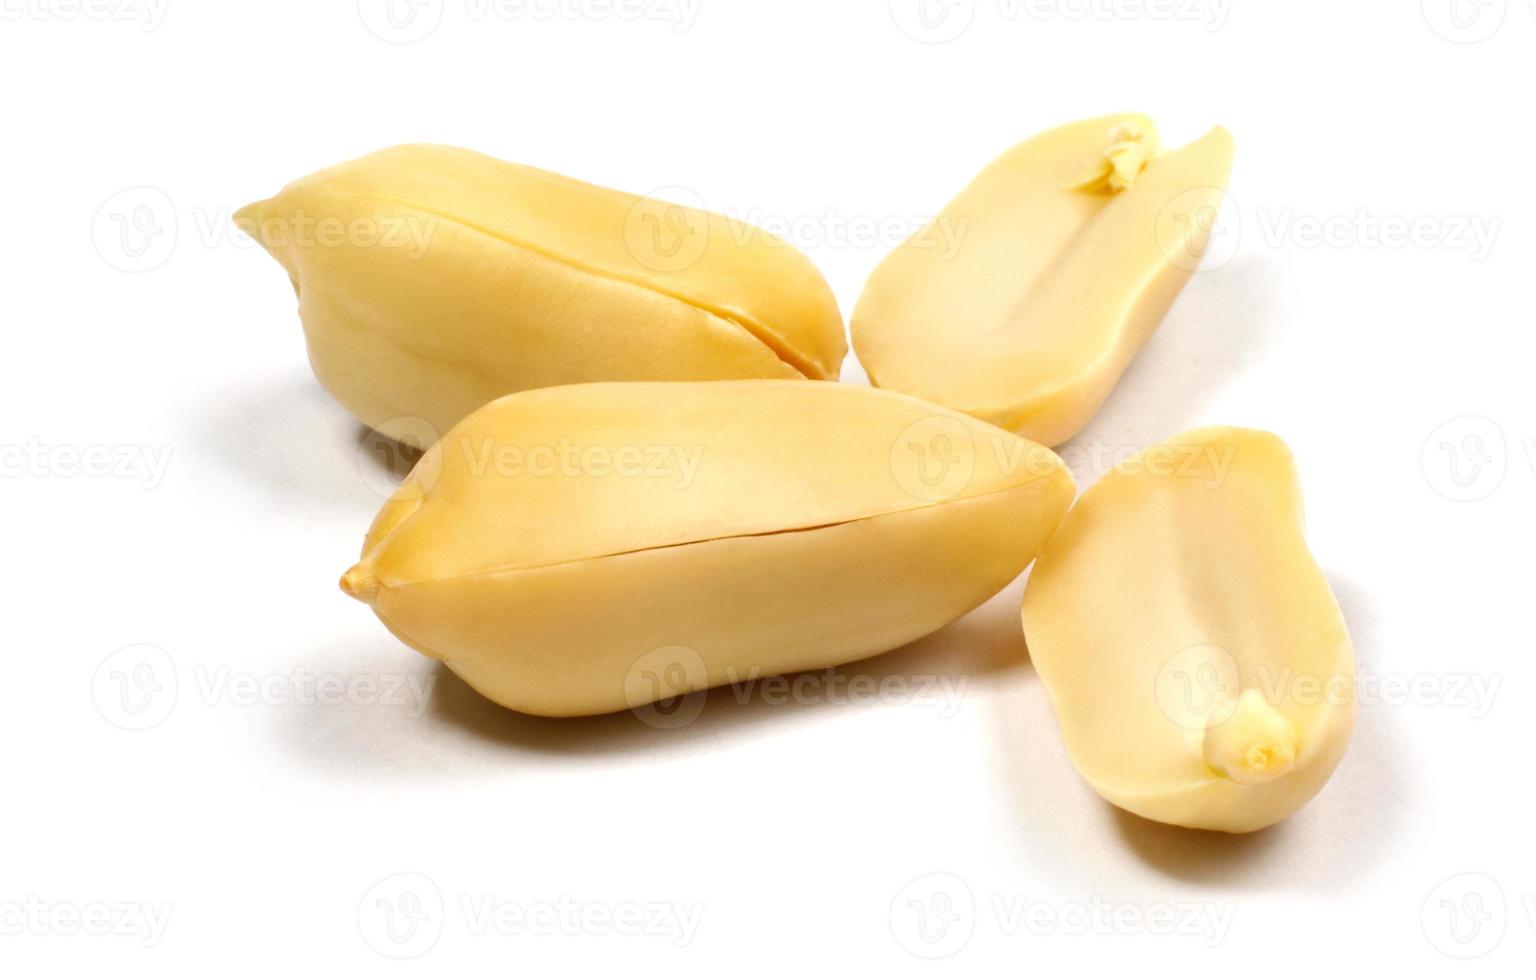 grãos de amendoim são isolados em um fundo branco. foto